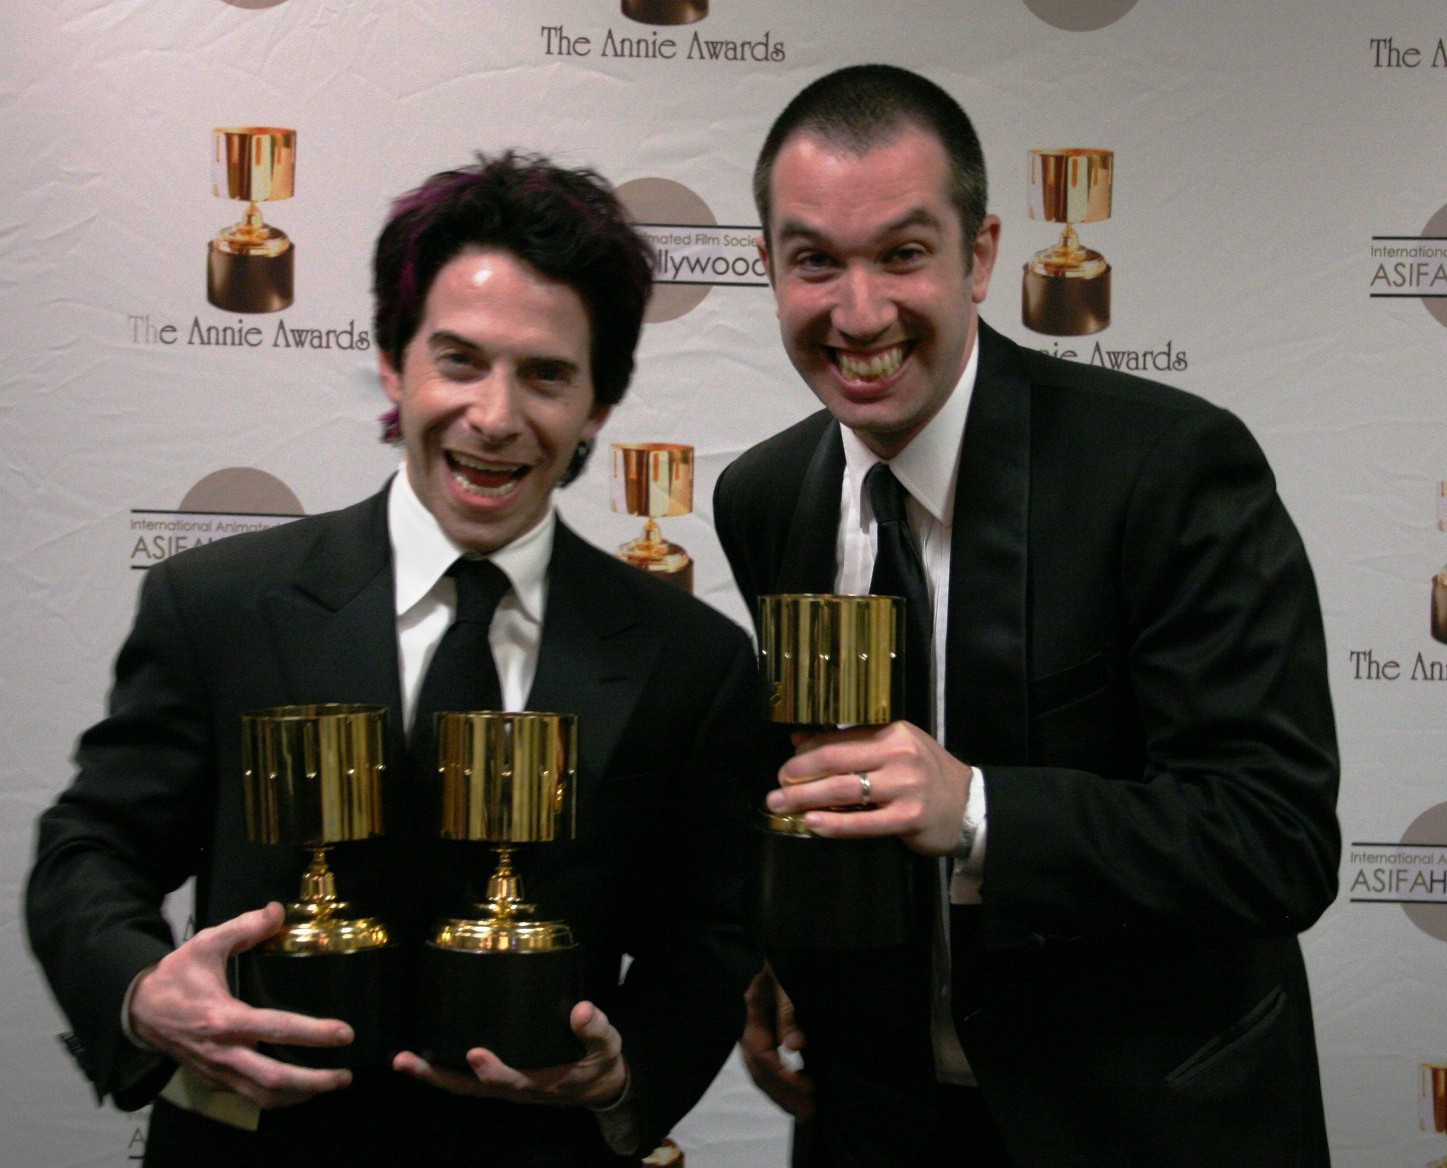 Seth Green and Matt Senreich celebrate the 3 awards Robot Chicken Star Wars II won